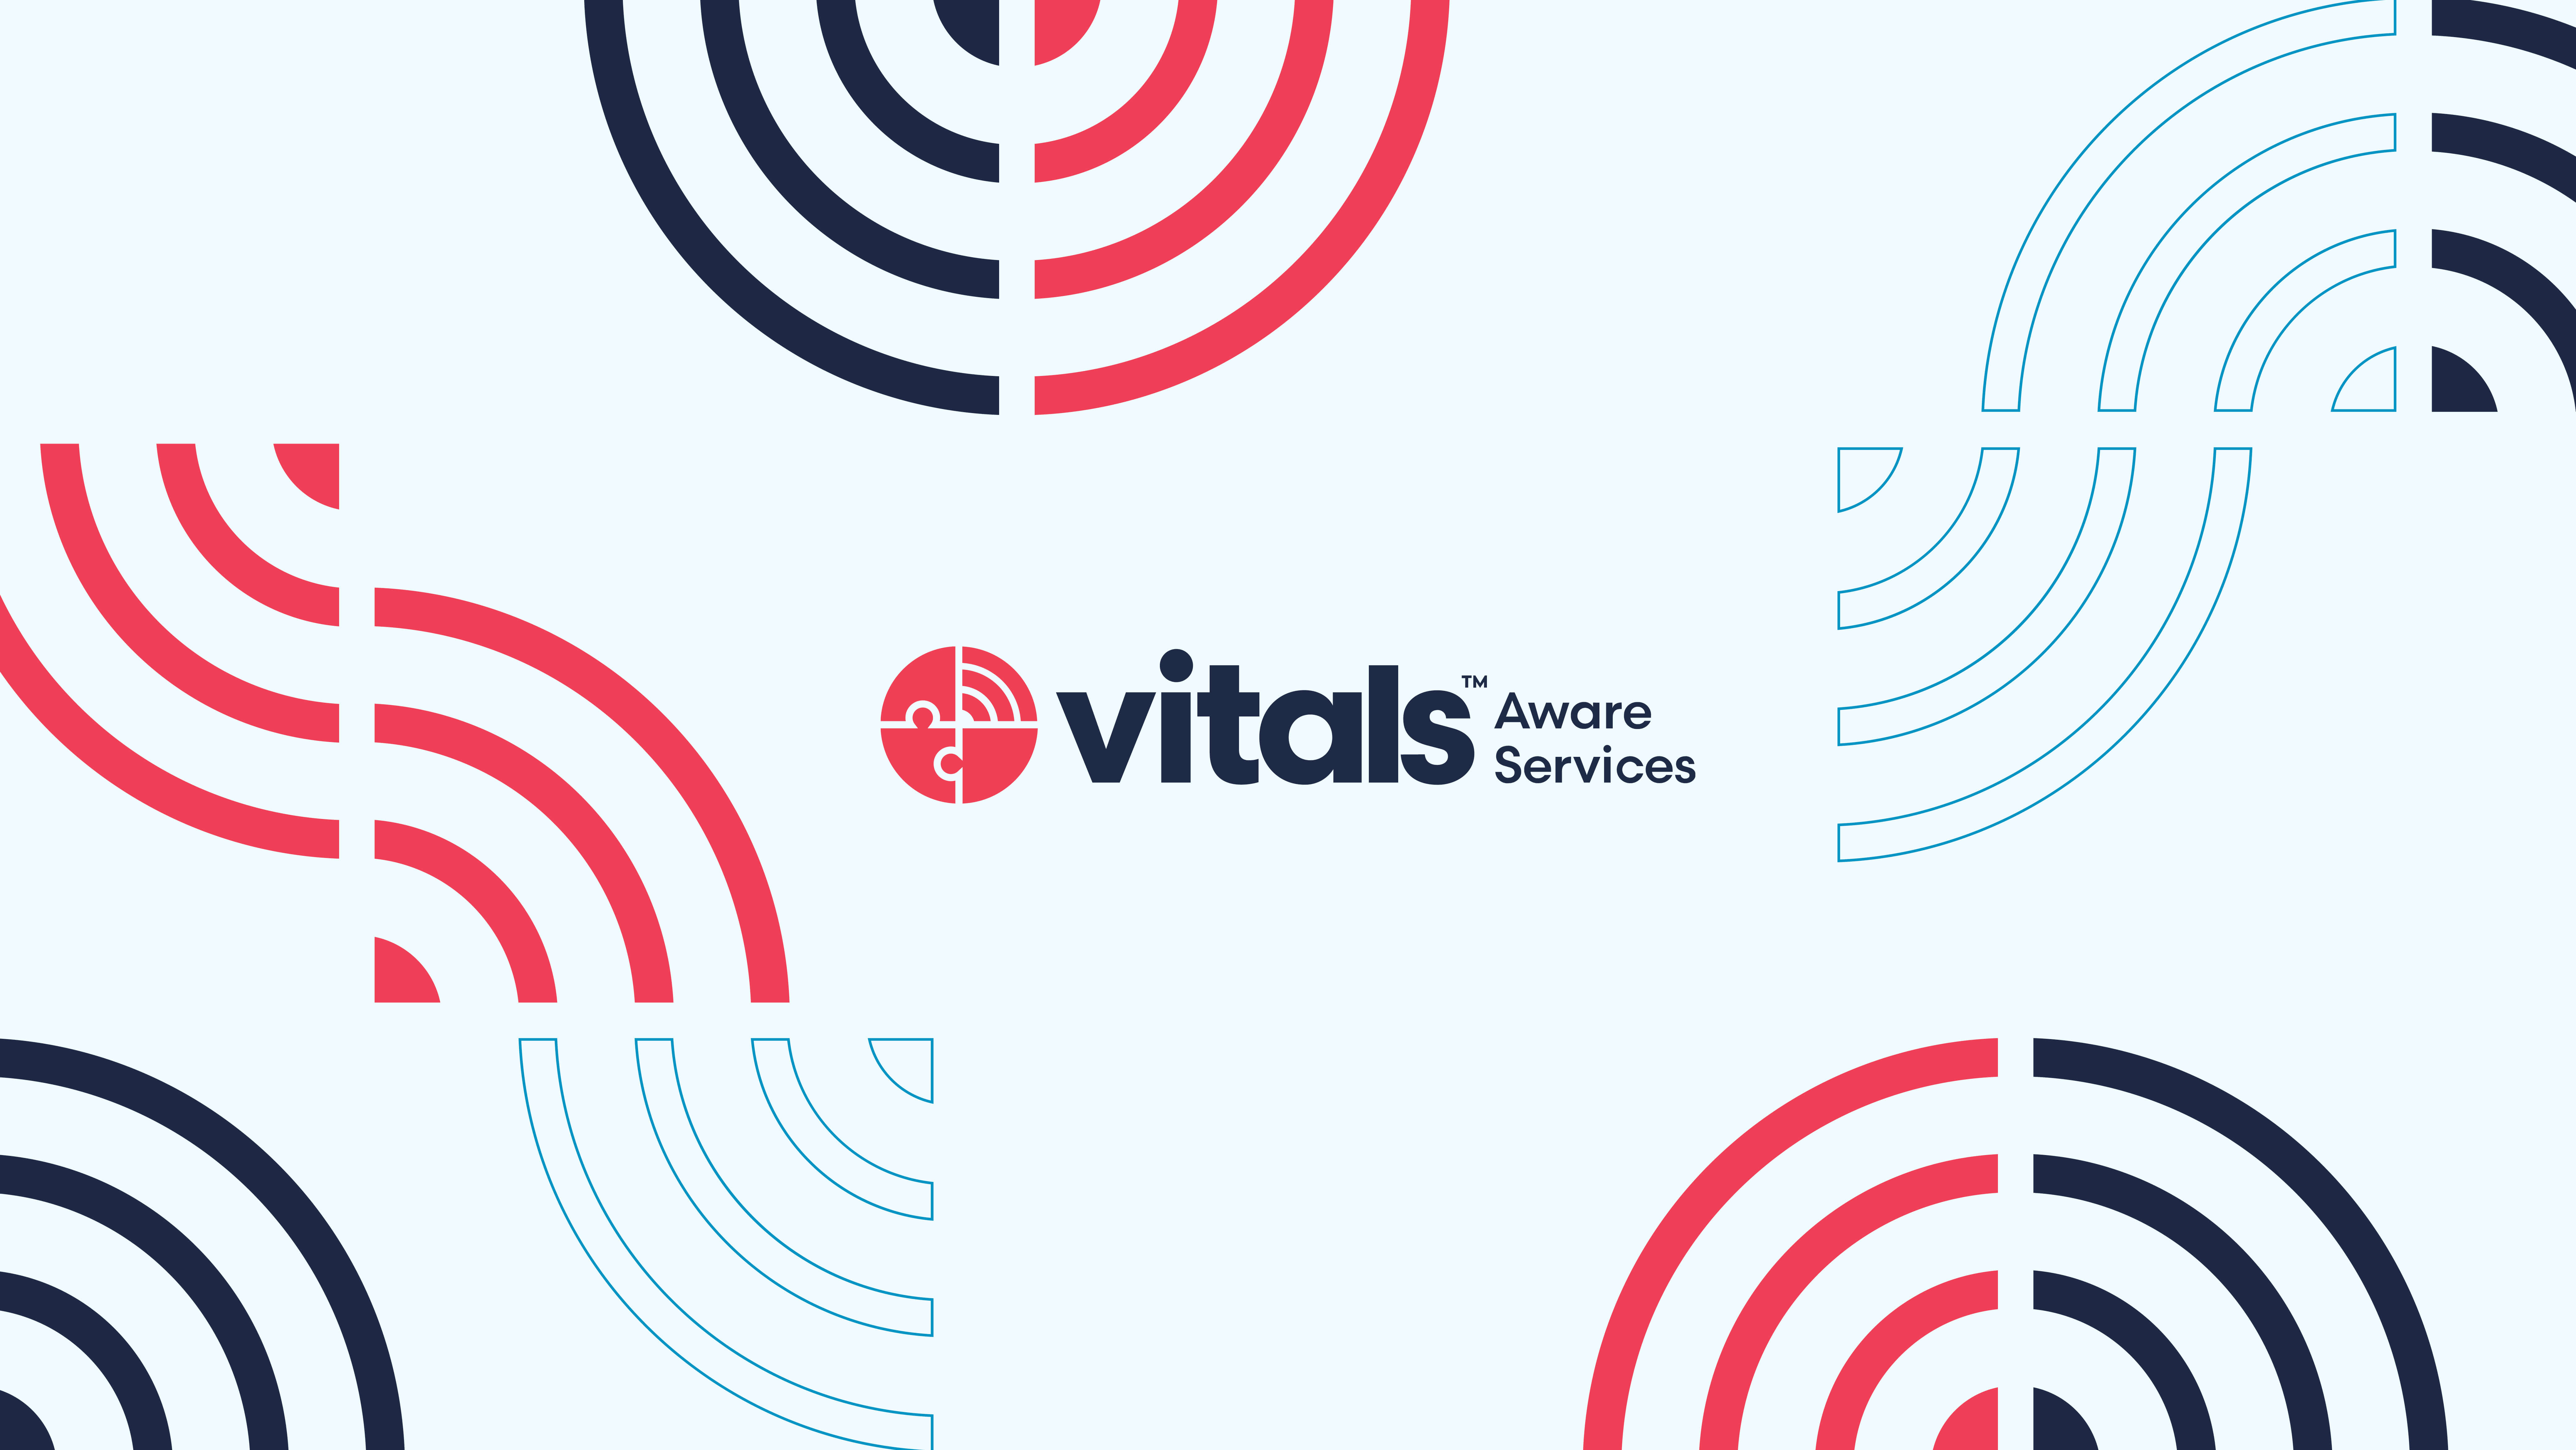 vitals aware services